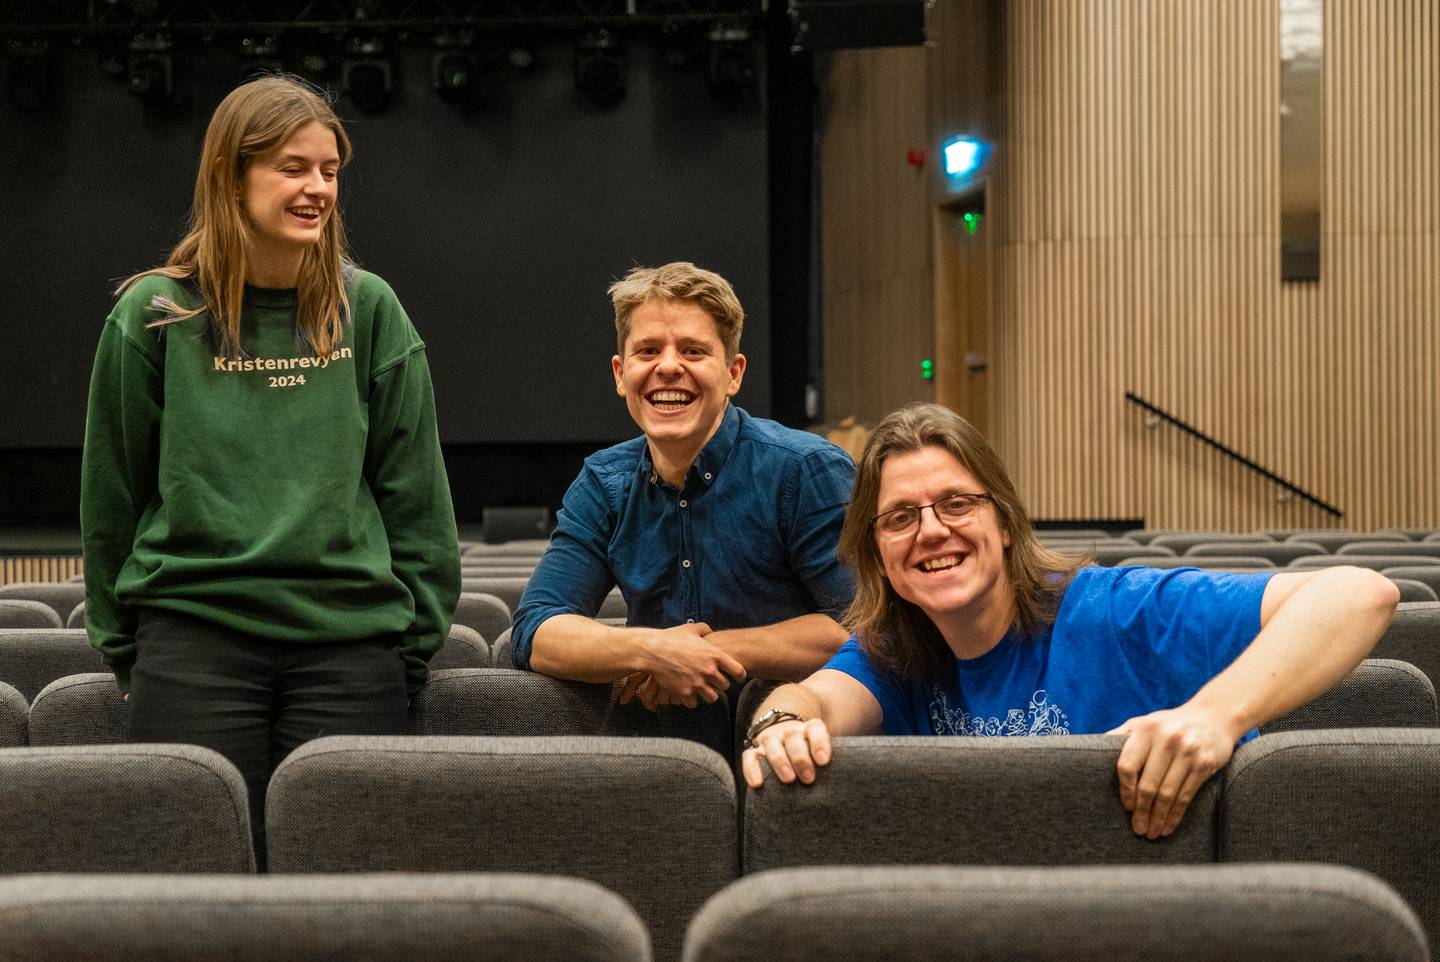 Peter Bull Hove (27), Ingrid Elisabeth Sundvold (25) og Henrik Mortensen øver til Kristenrevyen i Trondheim